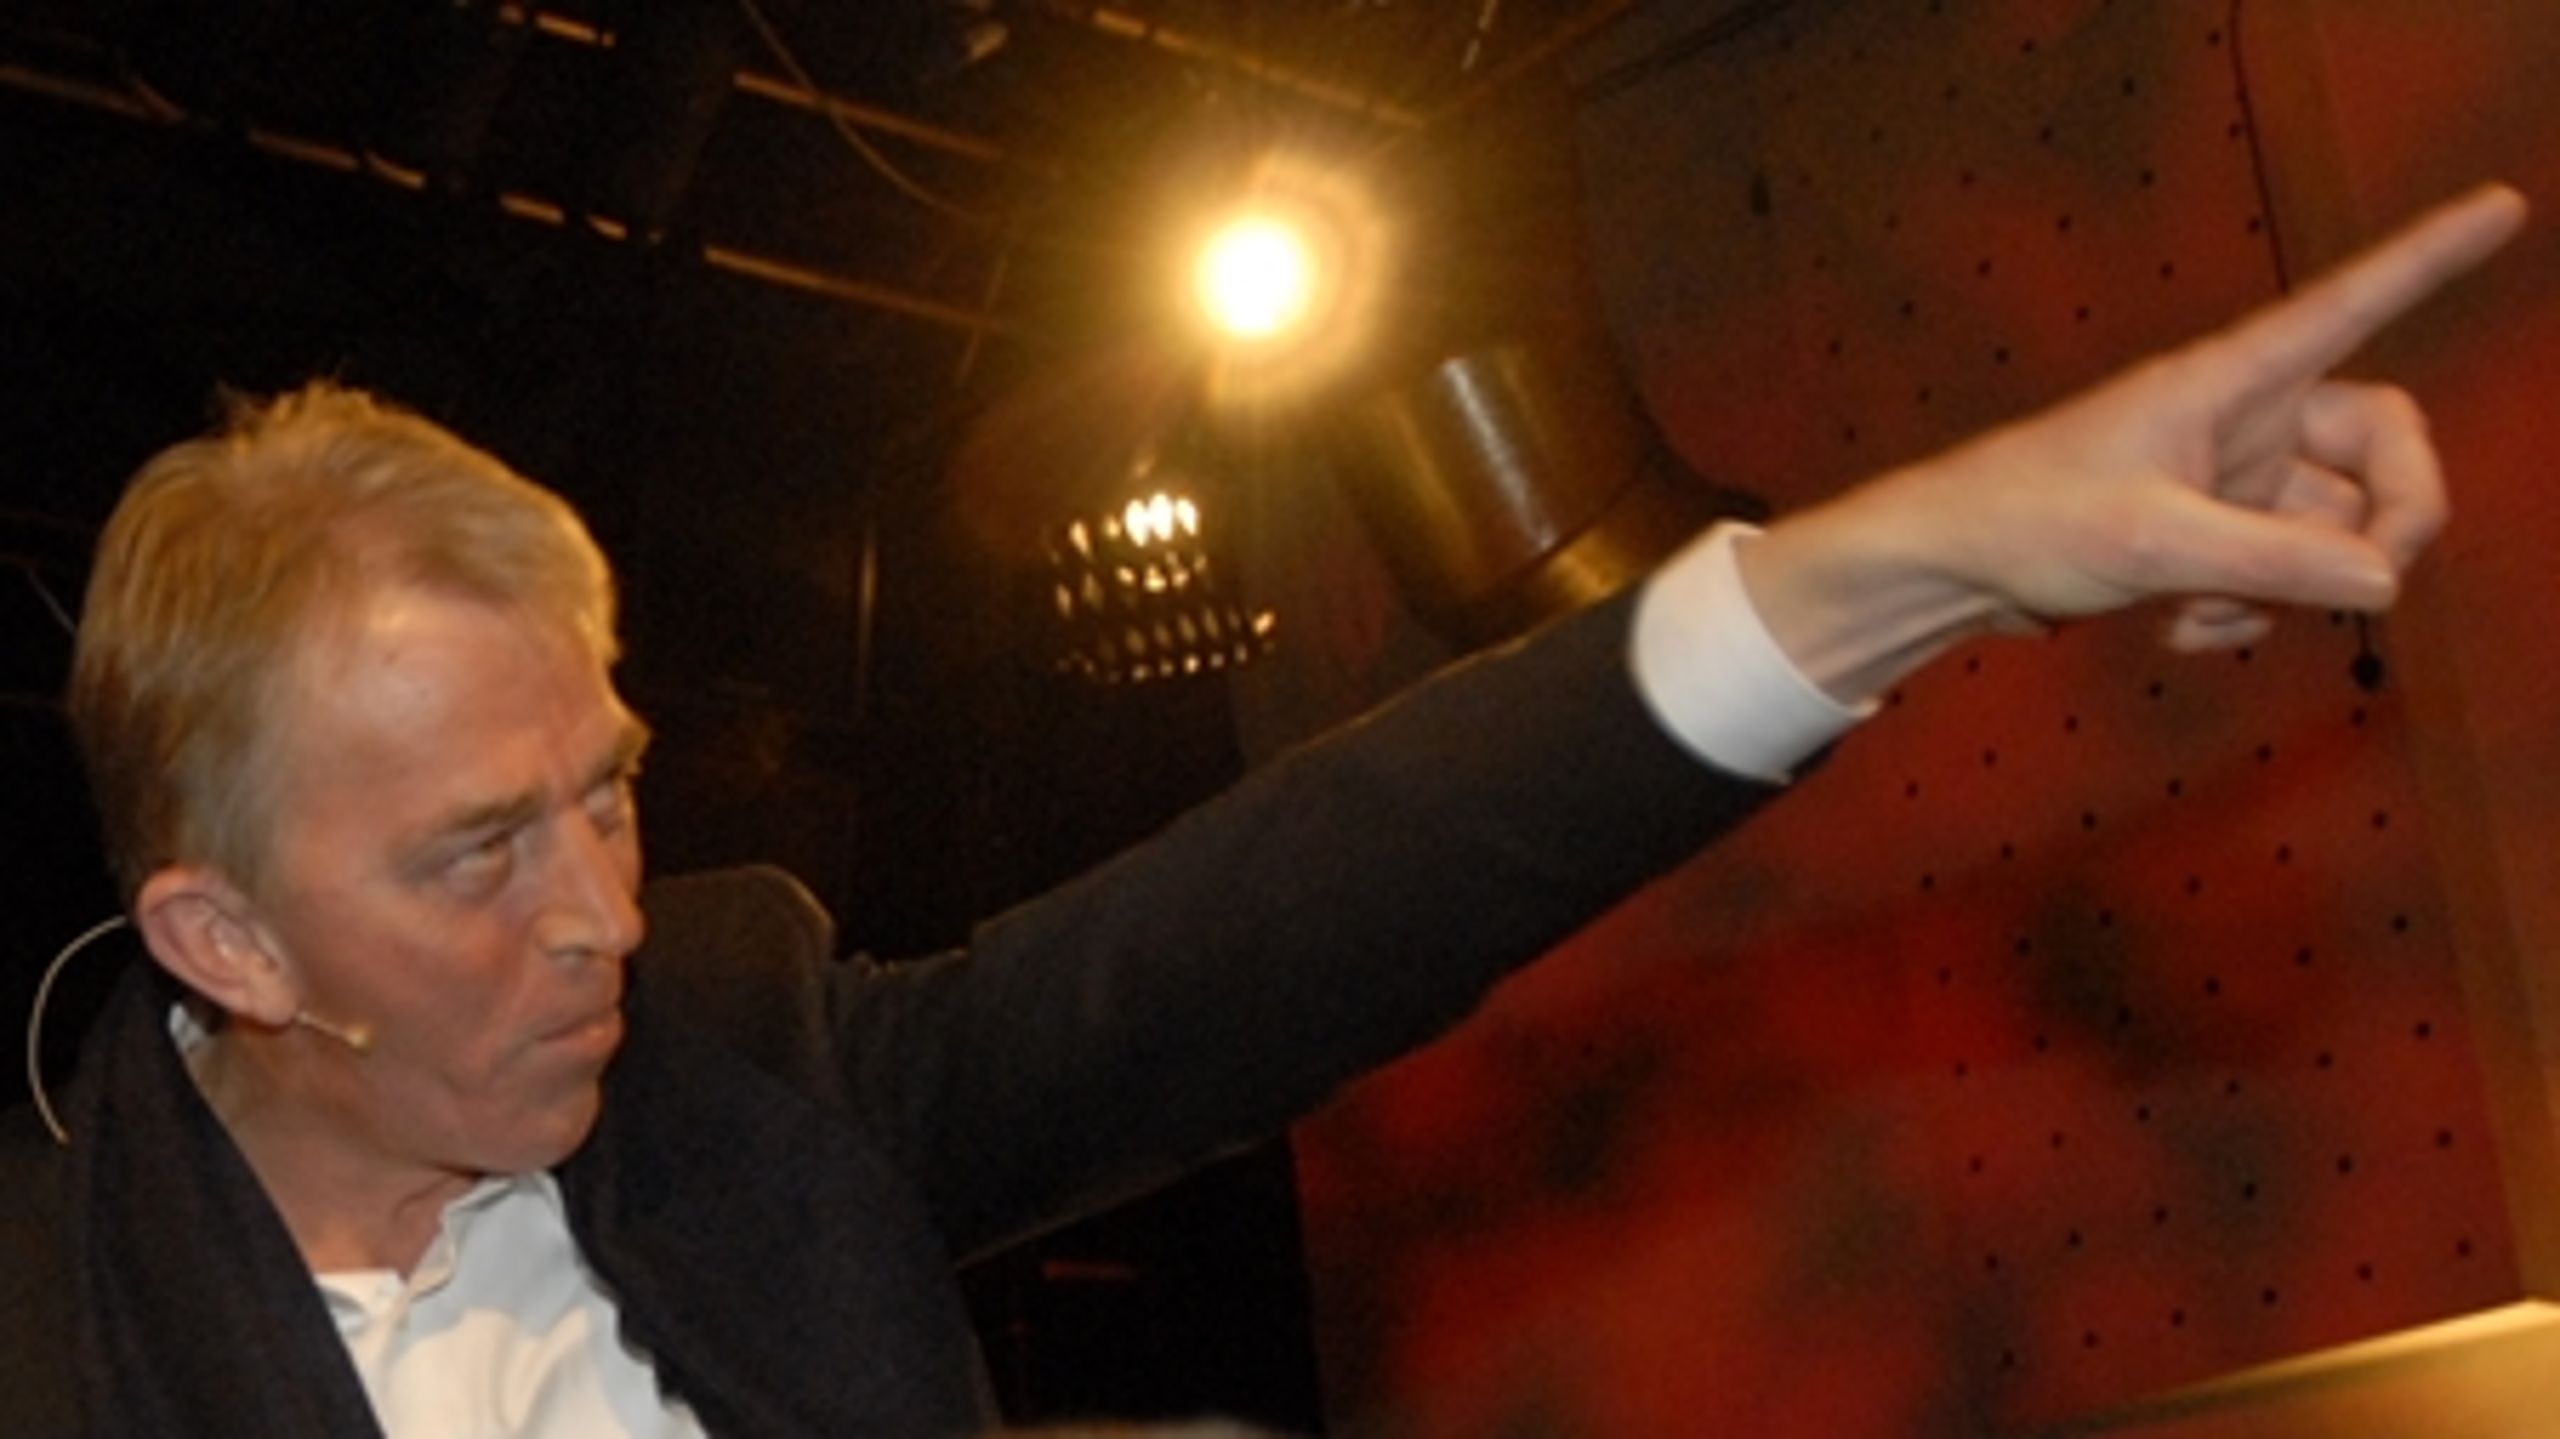 Brandet og stemmeslugeren Villy Søvndal toppede omkring 2007, hér viser han vejen for partifæller på valgnatten. Nu fylder han 60 år og skal til at beslutte sig for, hvordan den sidste del af karrieren skal spilles.